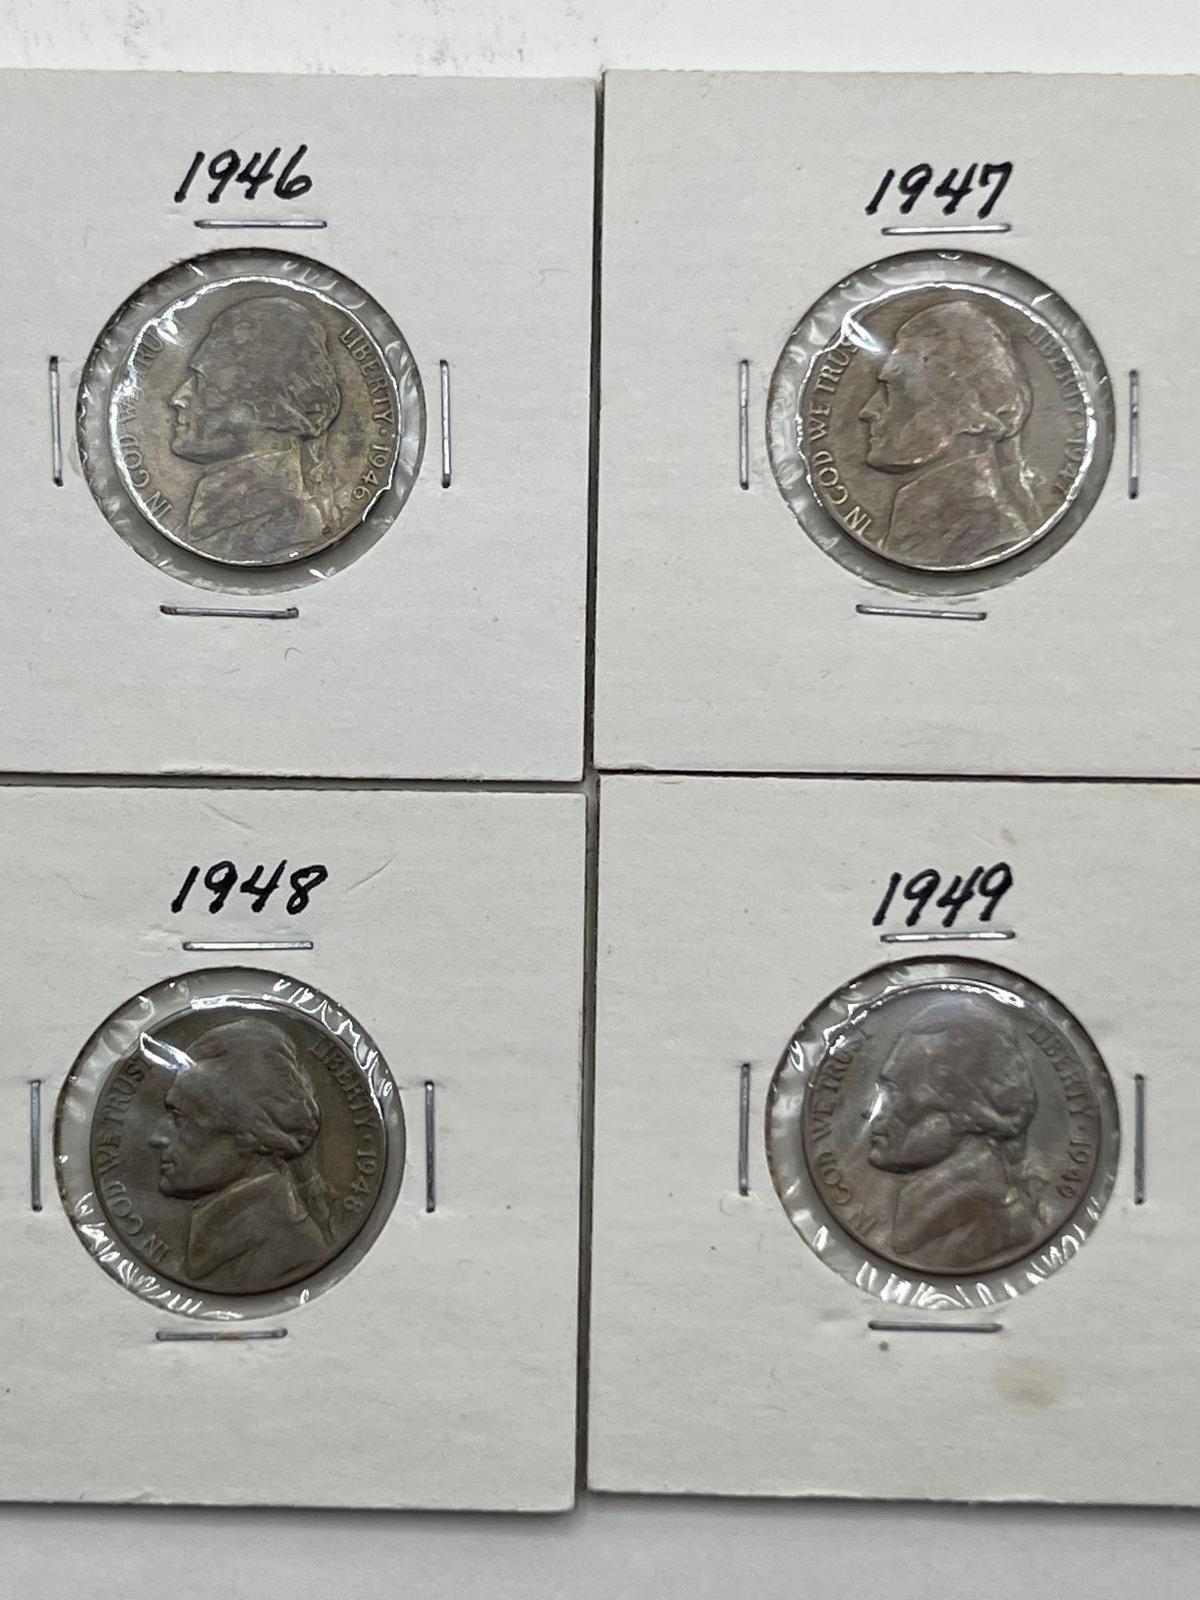 Nickel, 1946, 1947, 1948, 1949. (4 Total)